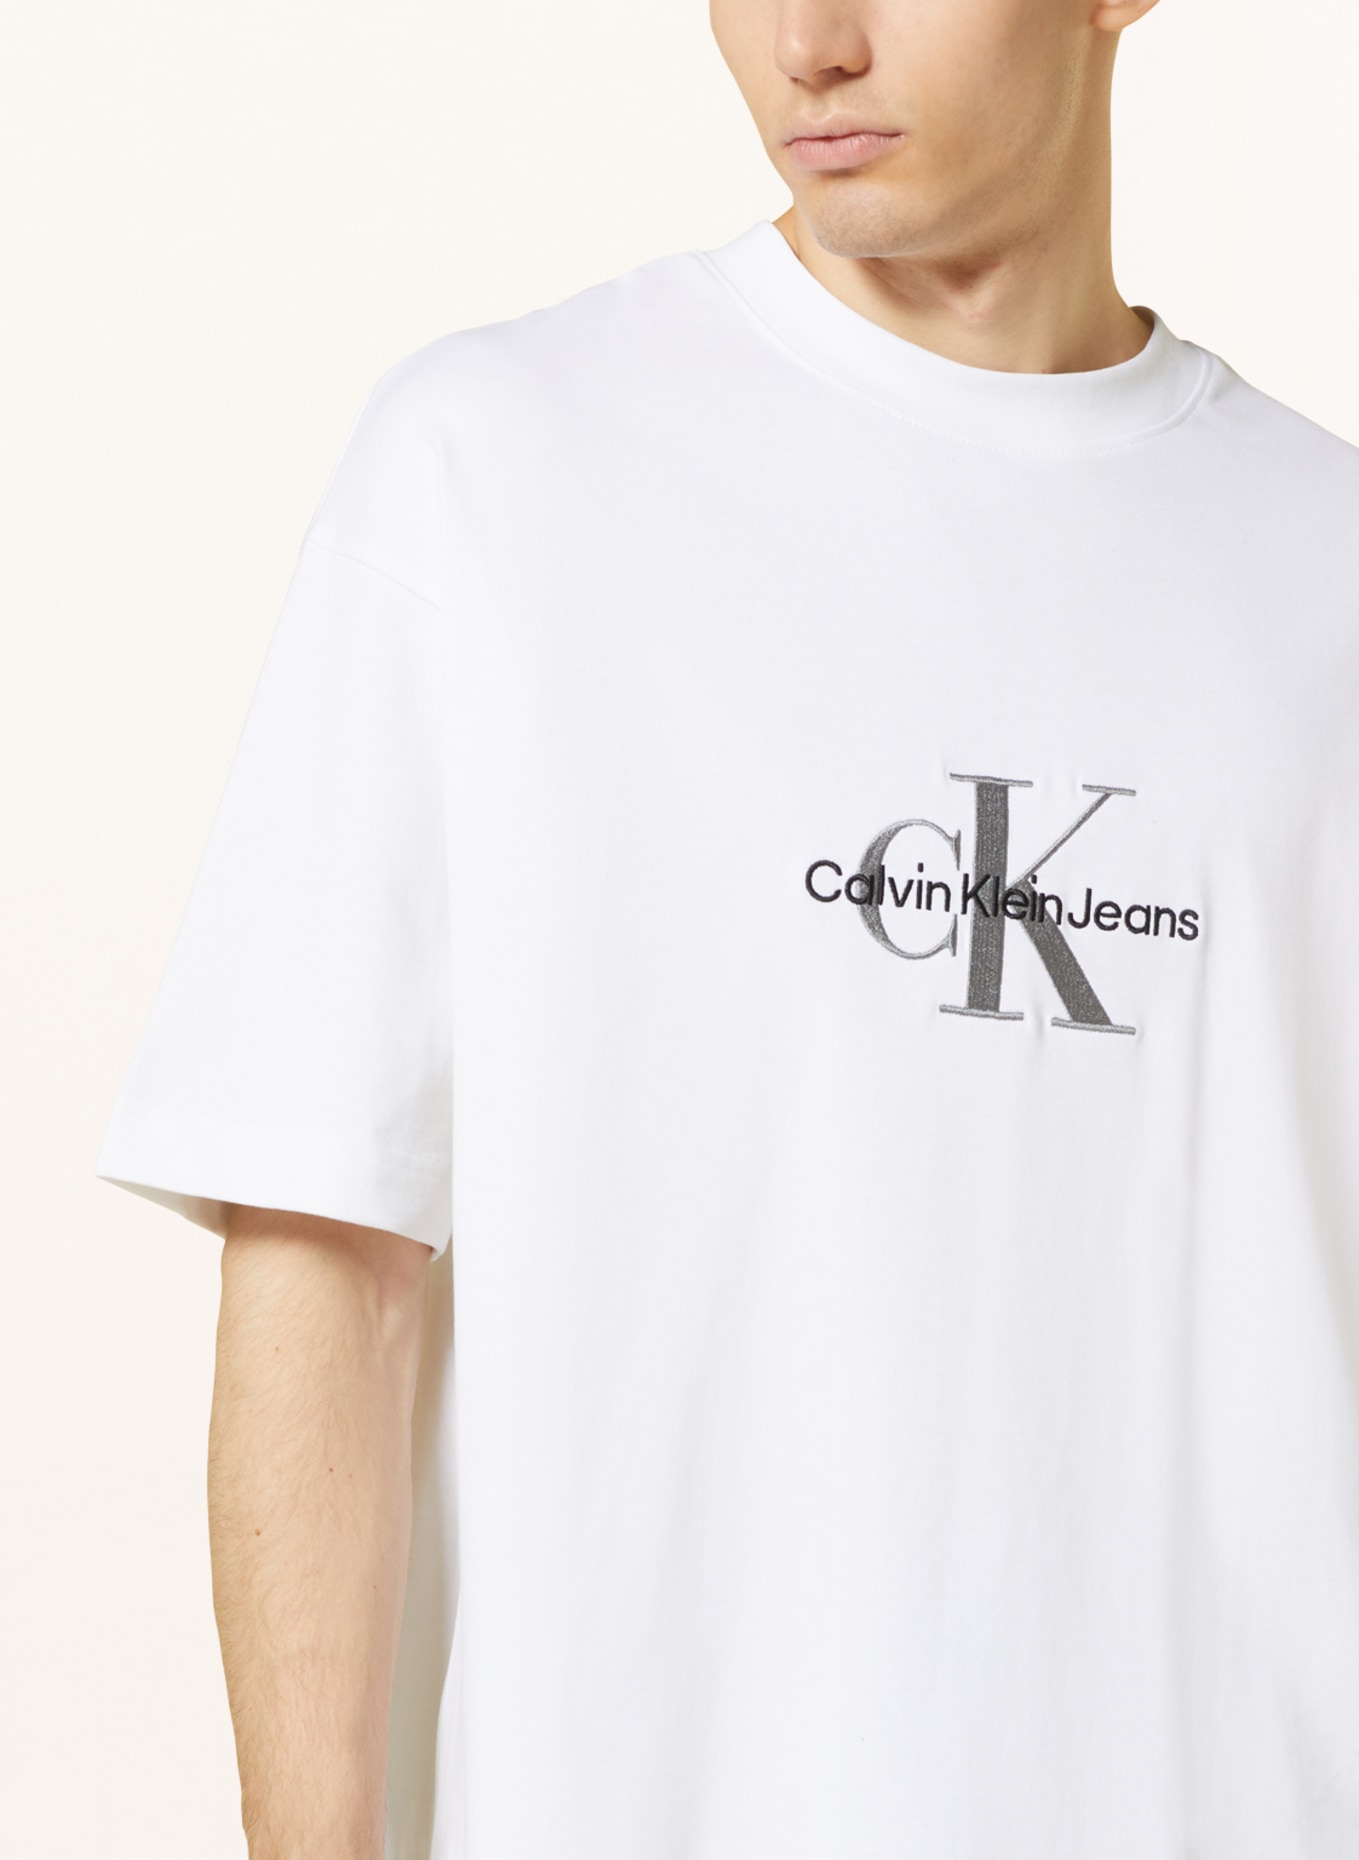 Calvin Klein Jeans T-Shirt in weiss/ schwarz/ grau